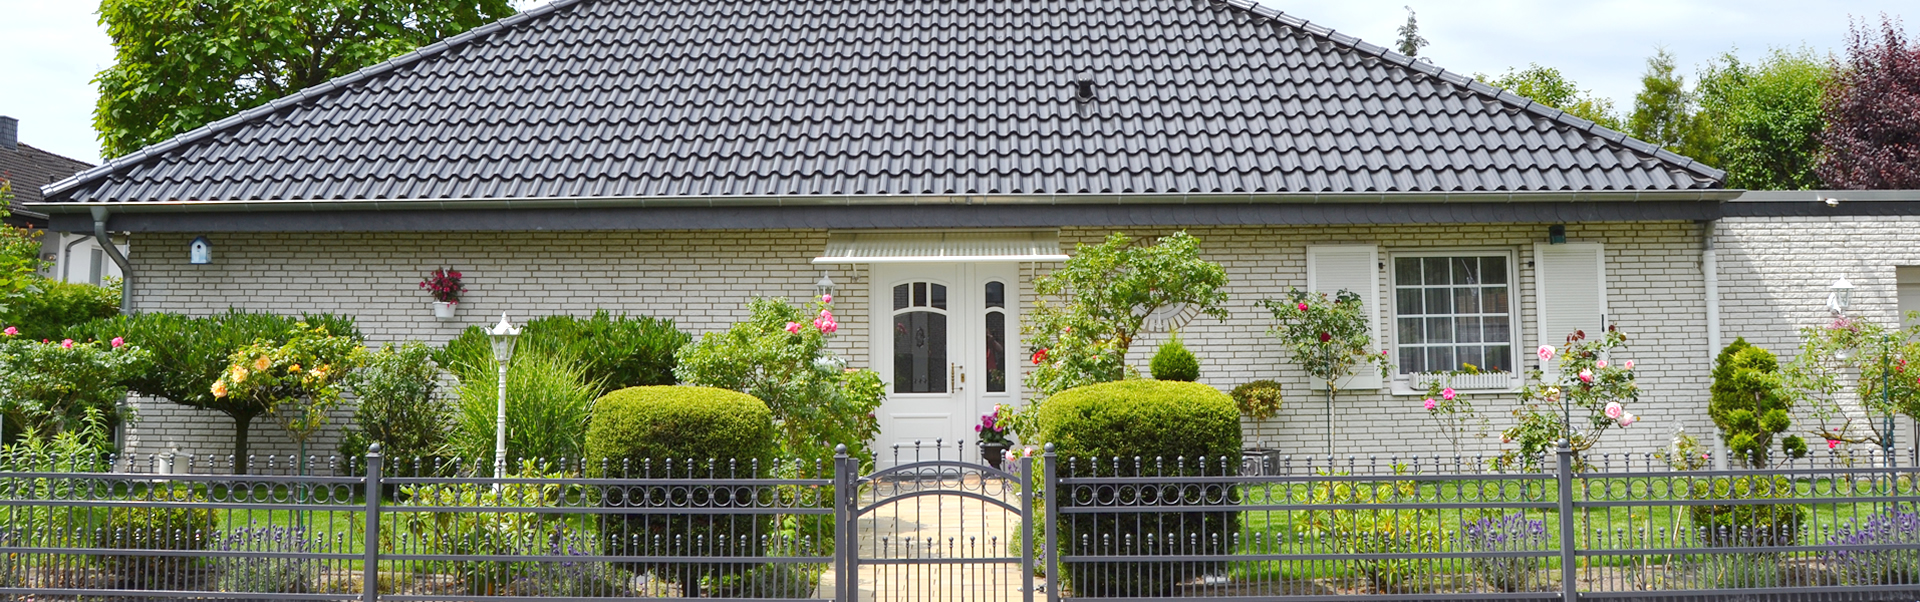 Eigentumswohnung oder Efh Haus bei Hannover Langenhagen verkaufen oder vermieten